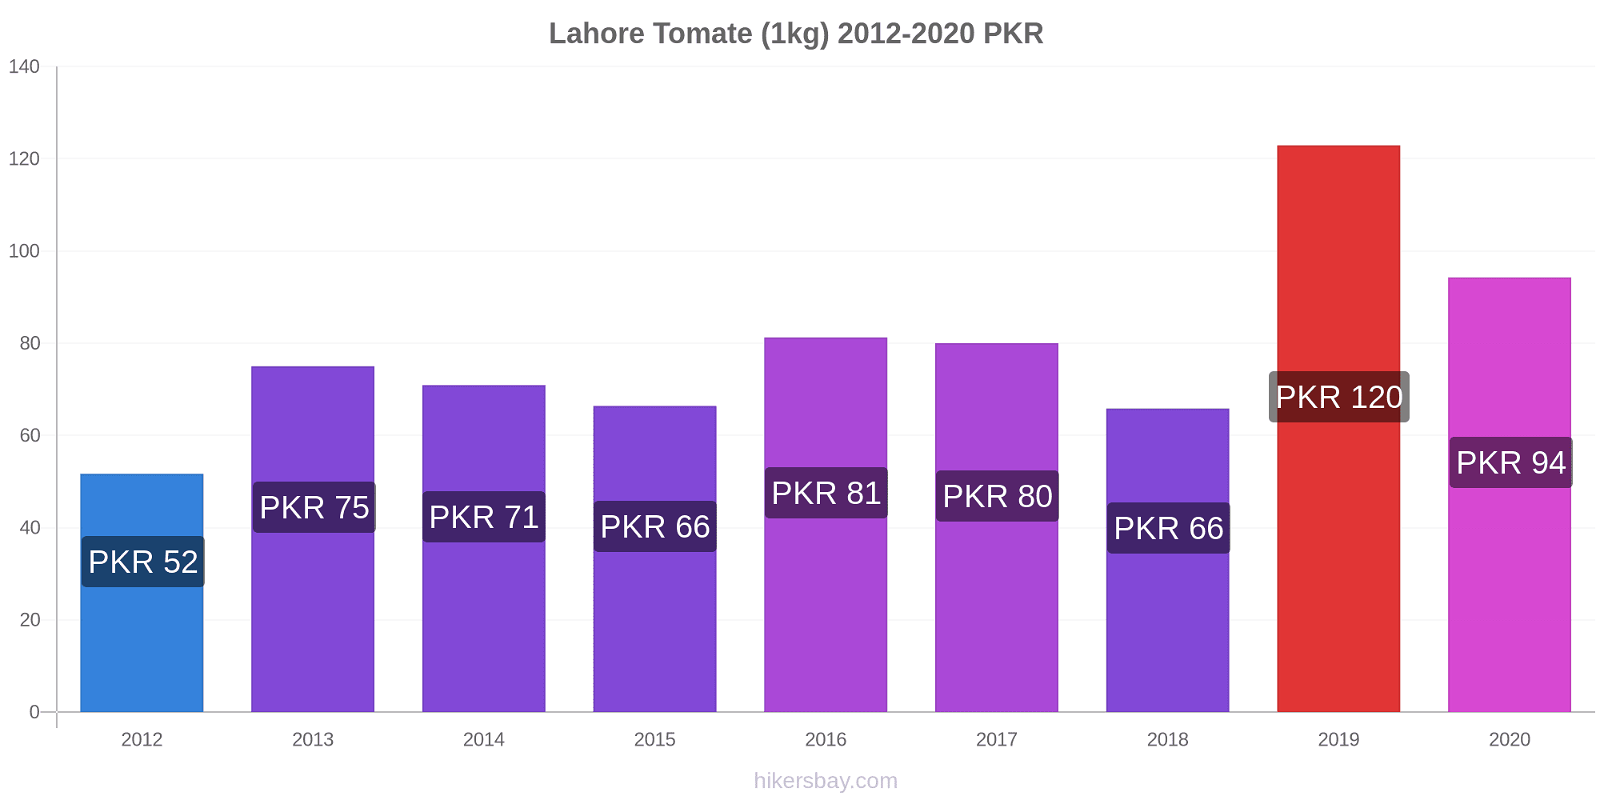 Lahore Preisänderungen Tomaten (1kg) hikersbay.com